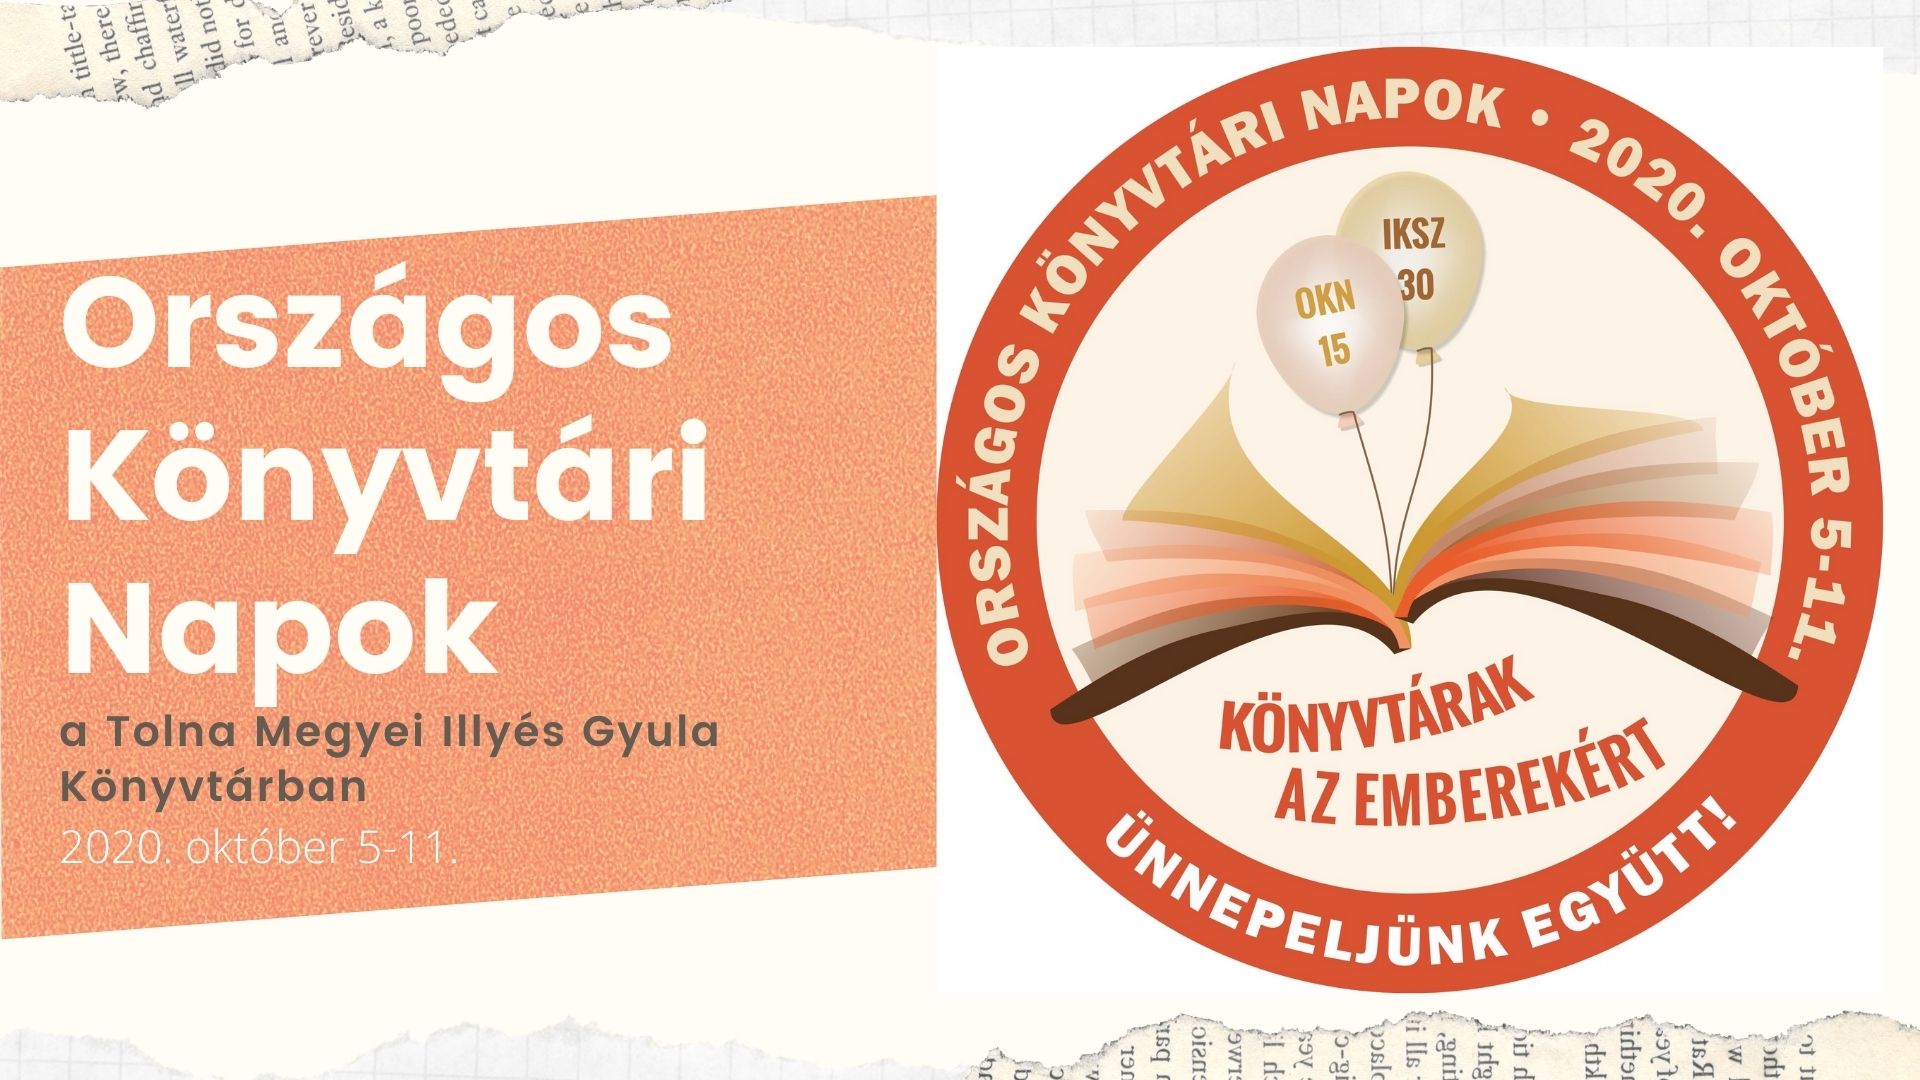 Országos Könyvtári Napok a Tolna Megyei Illyés Gyula Könyvtárban, 2020. október 5-11.